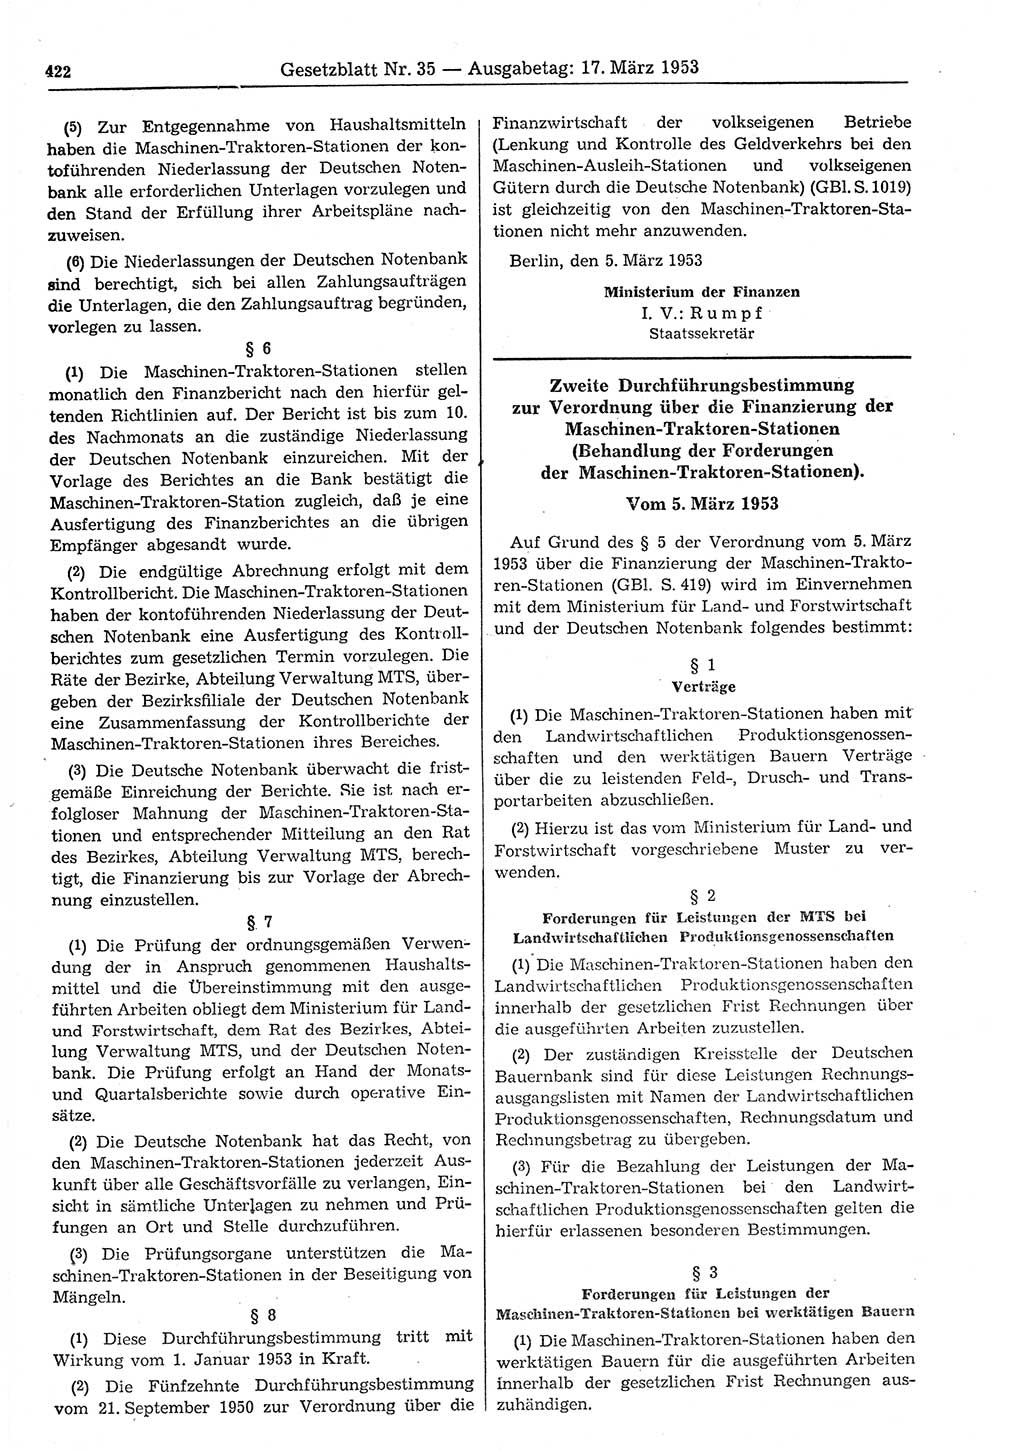 Gesetzblatt (GBl.) der Deutschen Demokratischen Republik (DDR) 1953, Seite 422 (GBl. DDR 1953, S. 422)